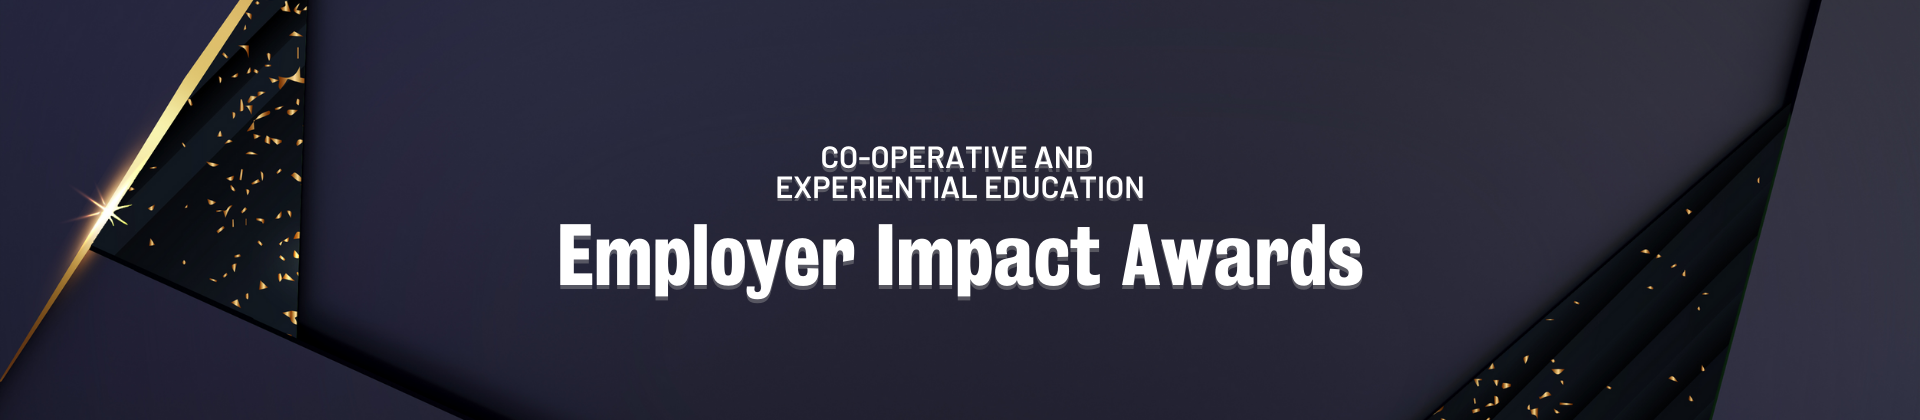 employer impact award image